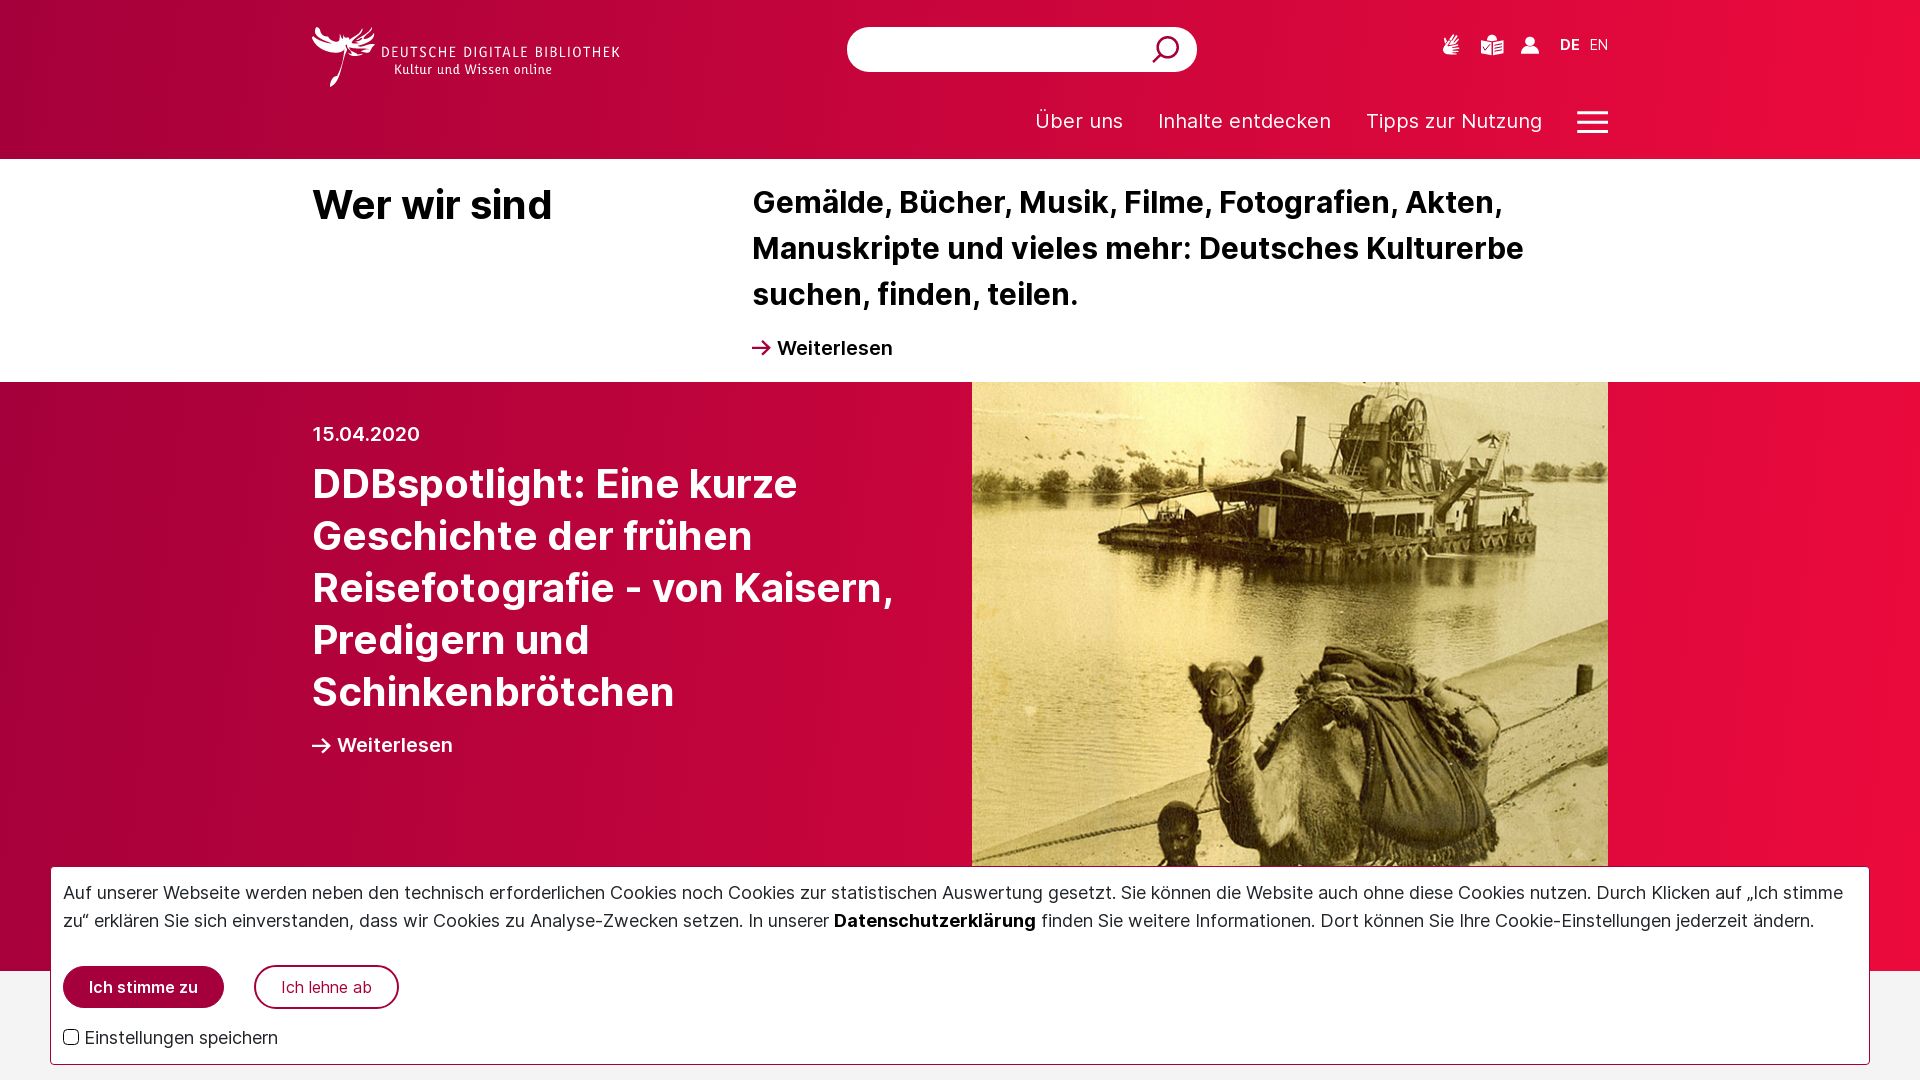 Website status deutsche-digitale-bibliothek.de is   ONLINE